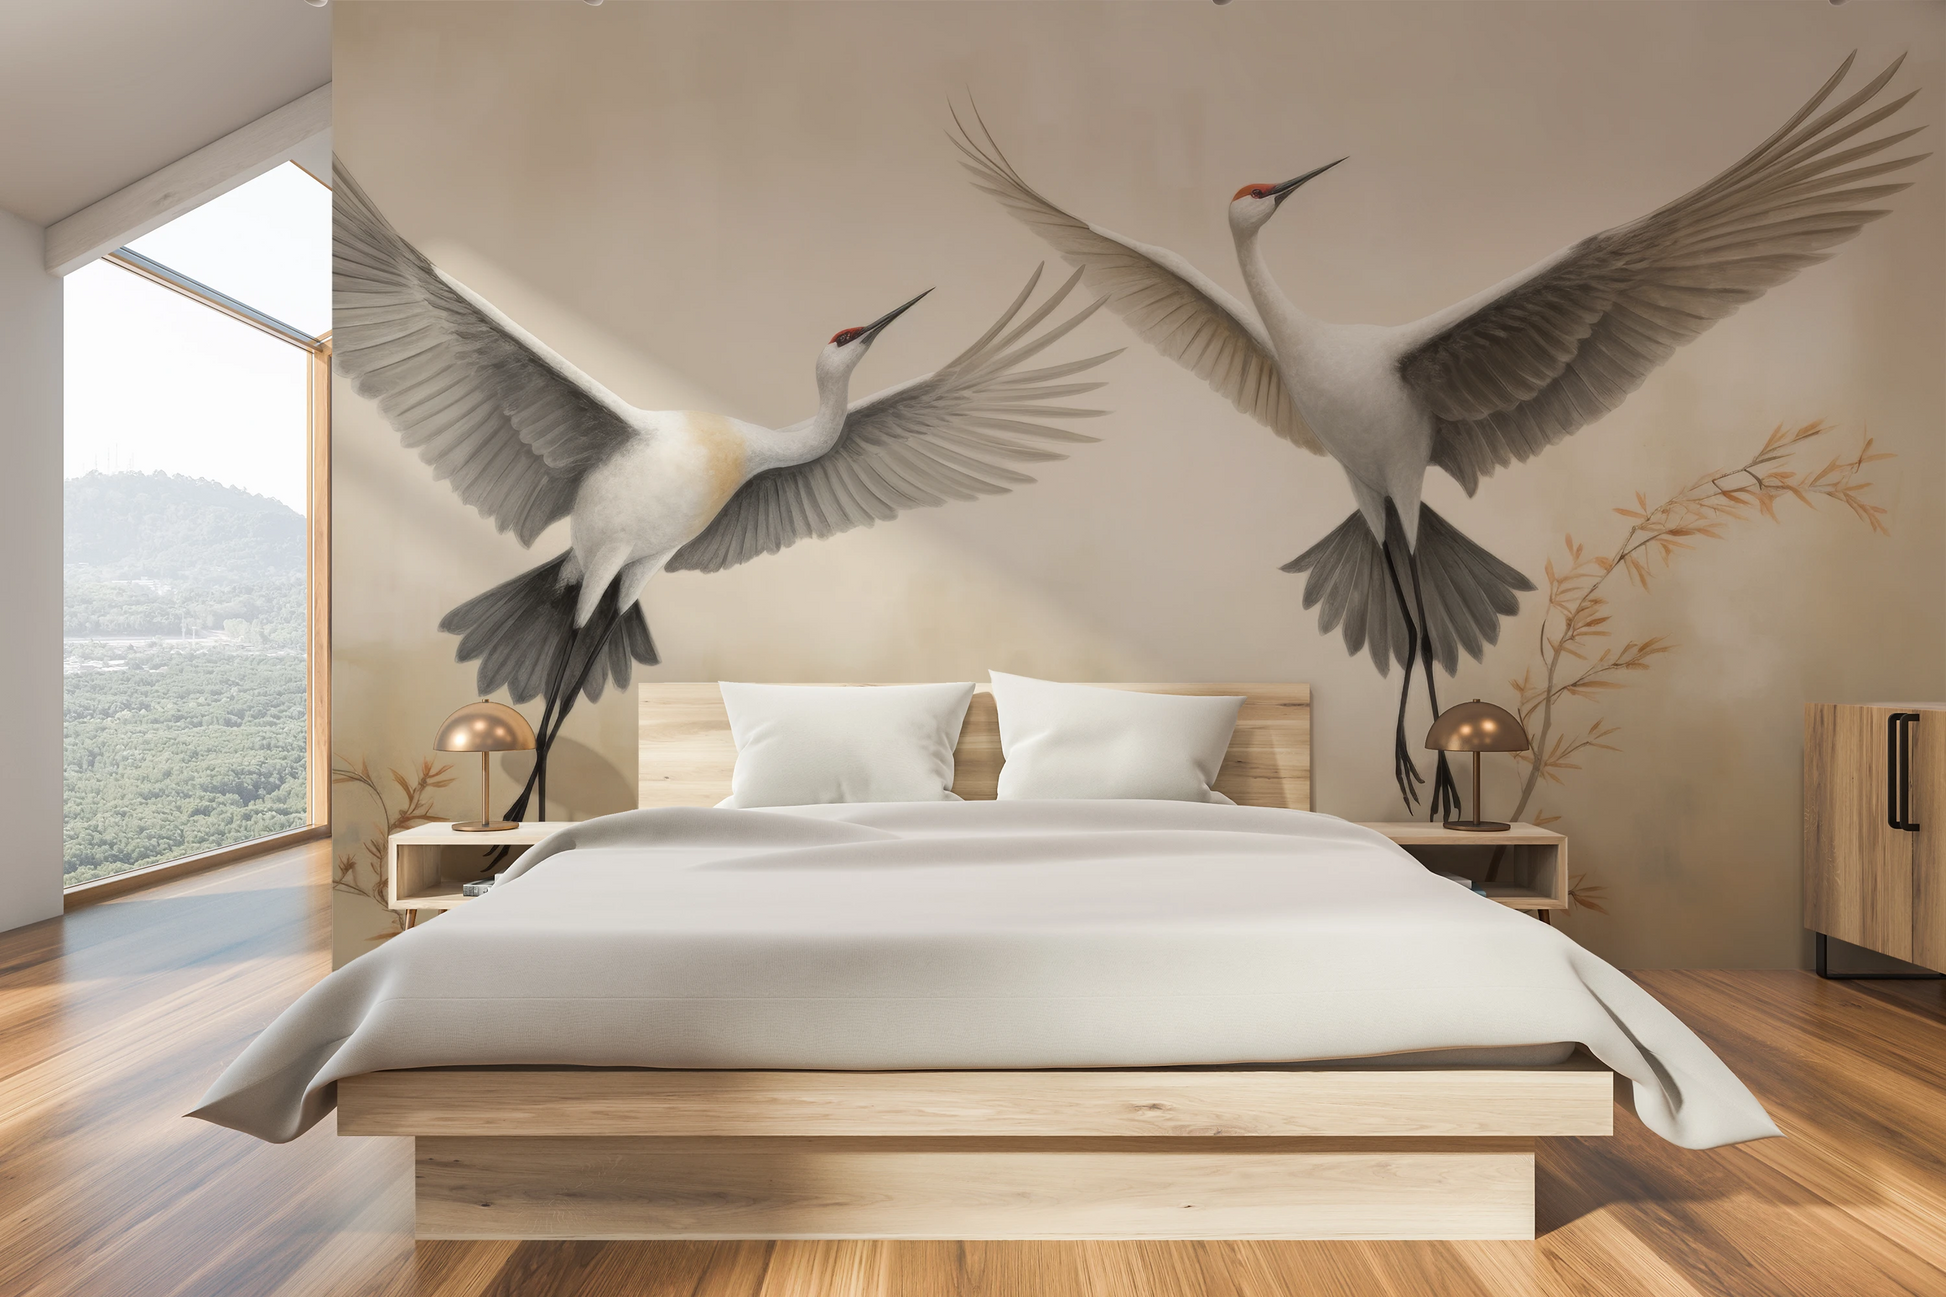 Wzór fototapety o nazwie Wings of Serenity pokazanej w kontekście pomieszczenia.